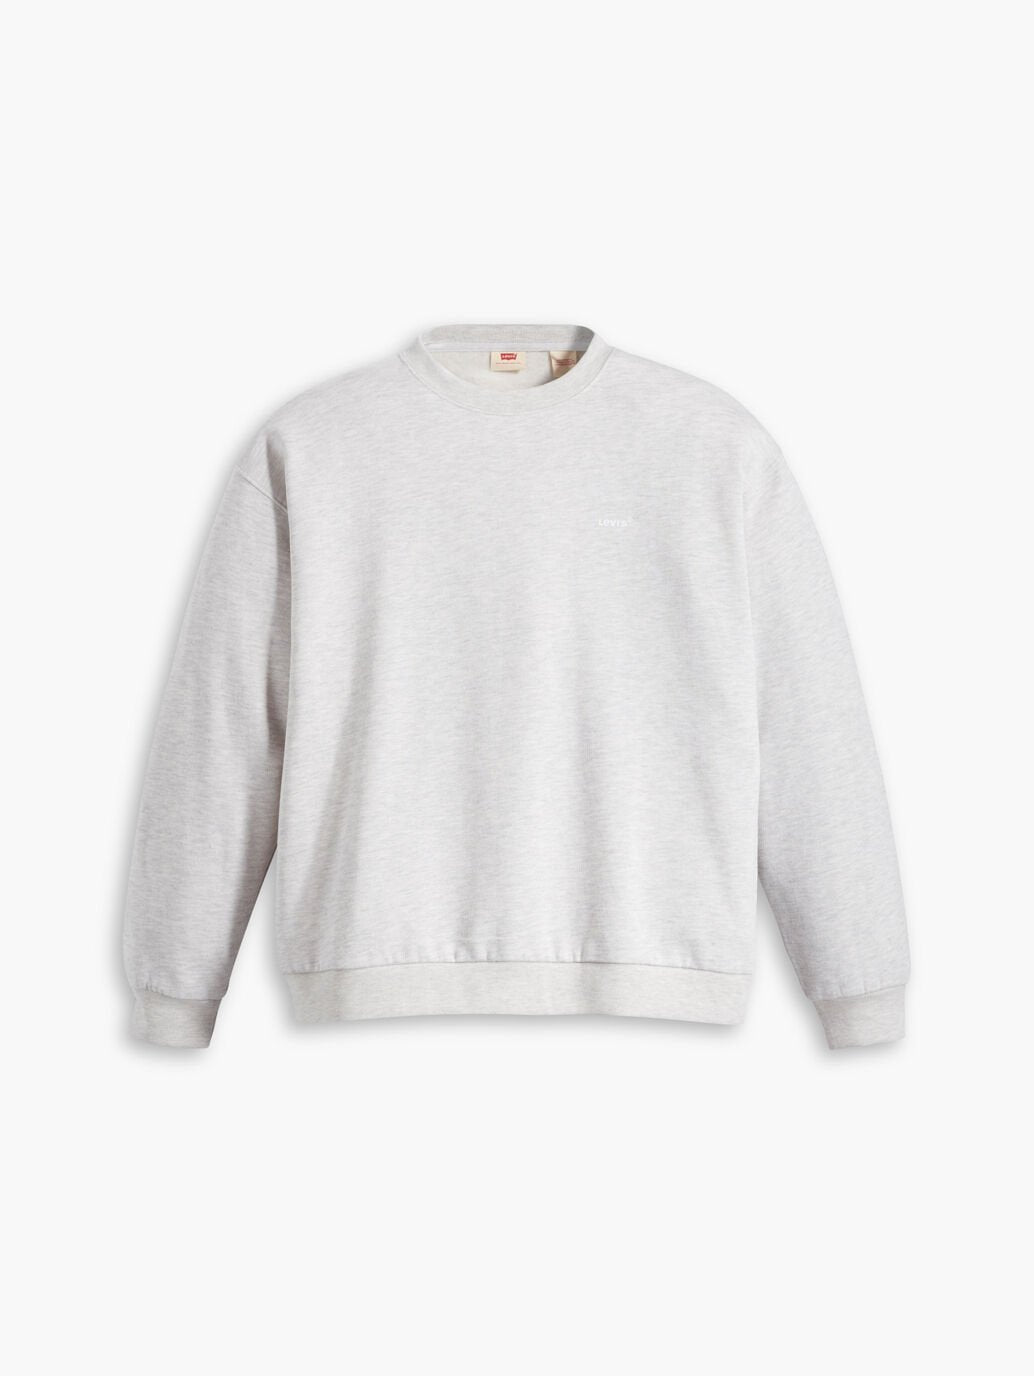 LEVIS // Everyday Sweatshirt ORBIT GREY